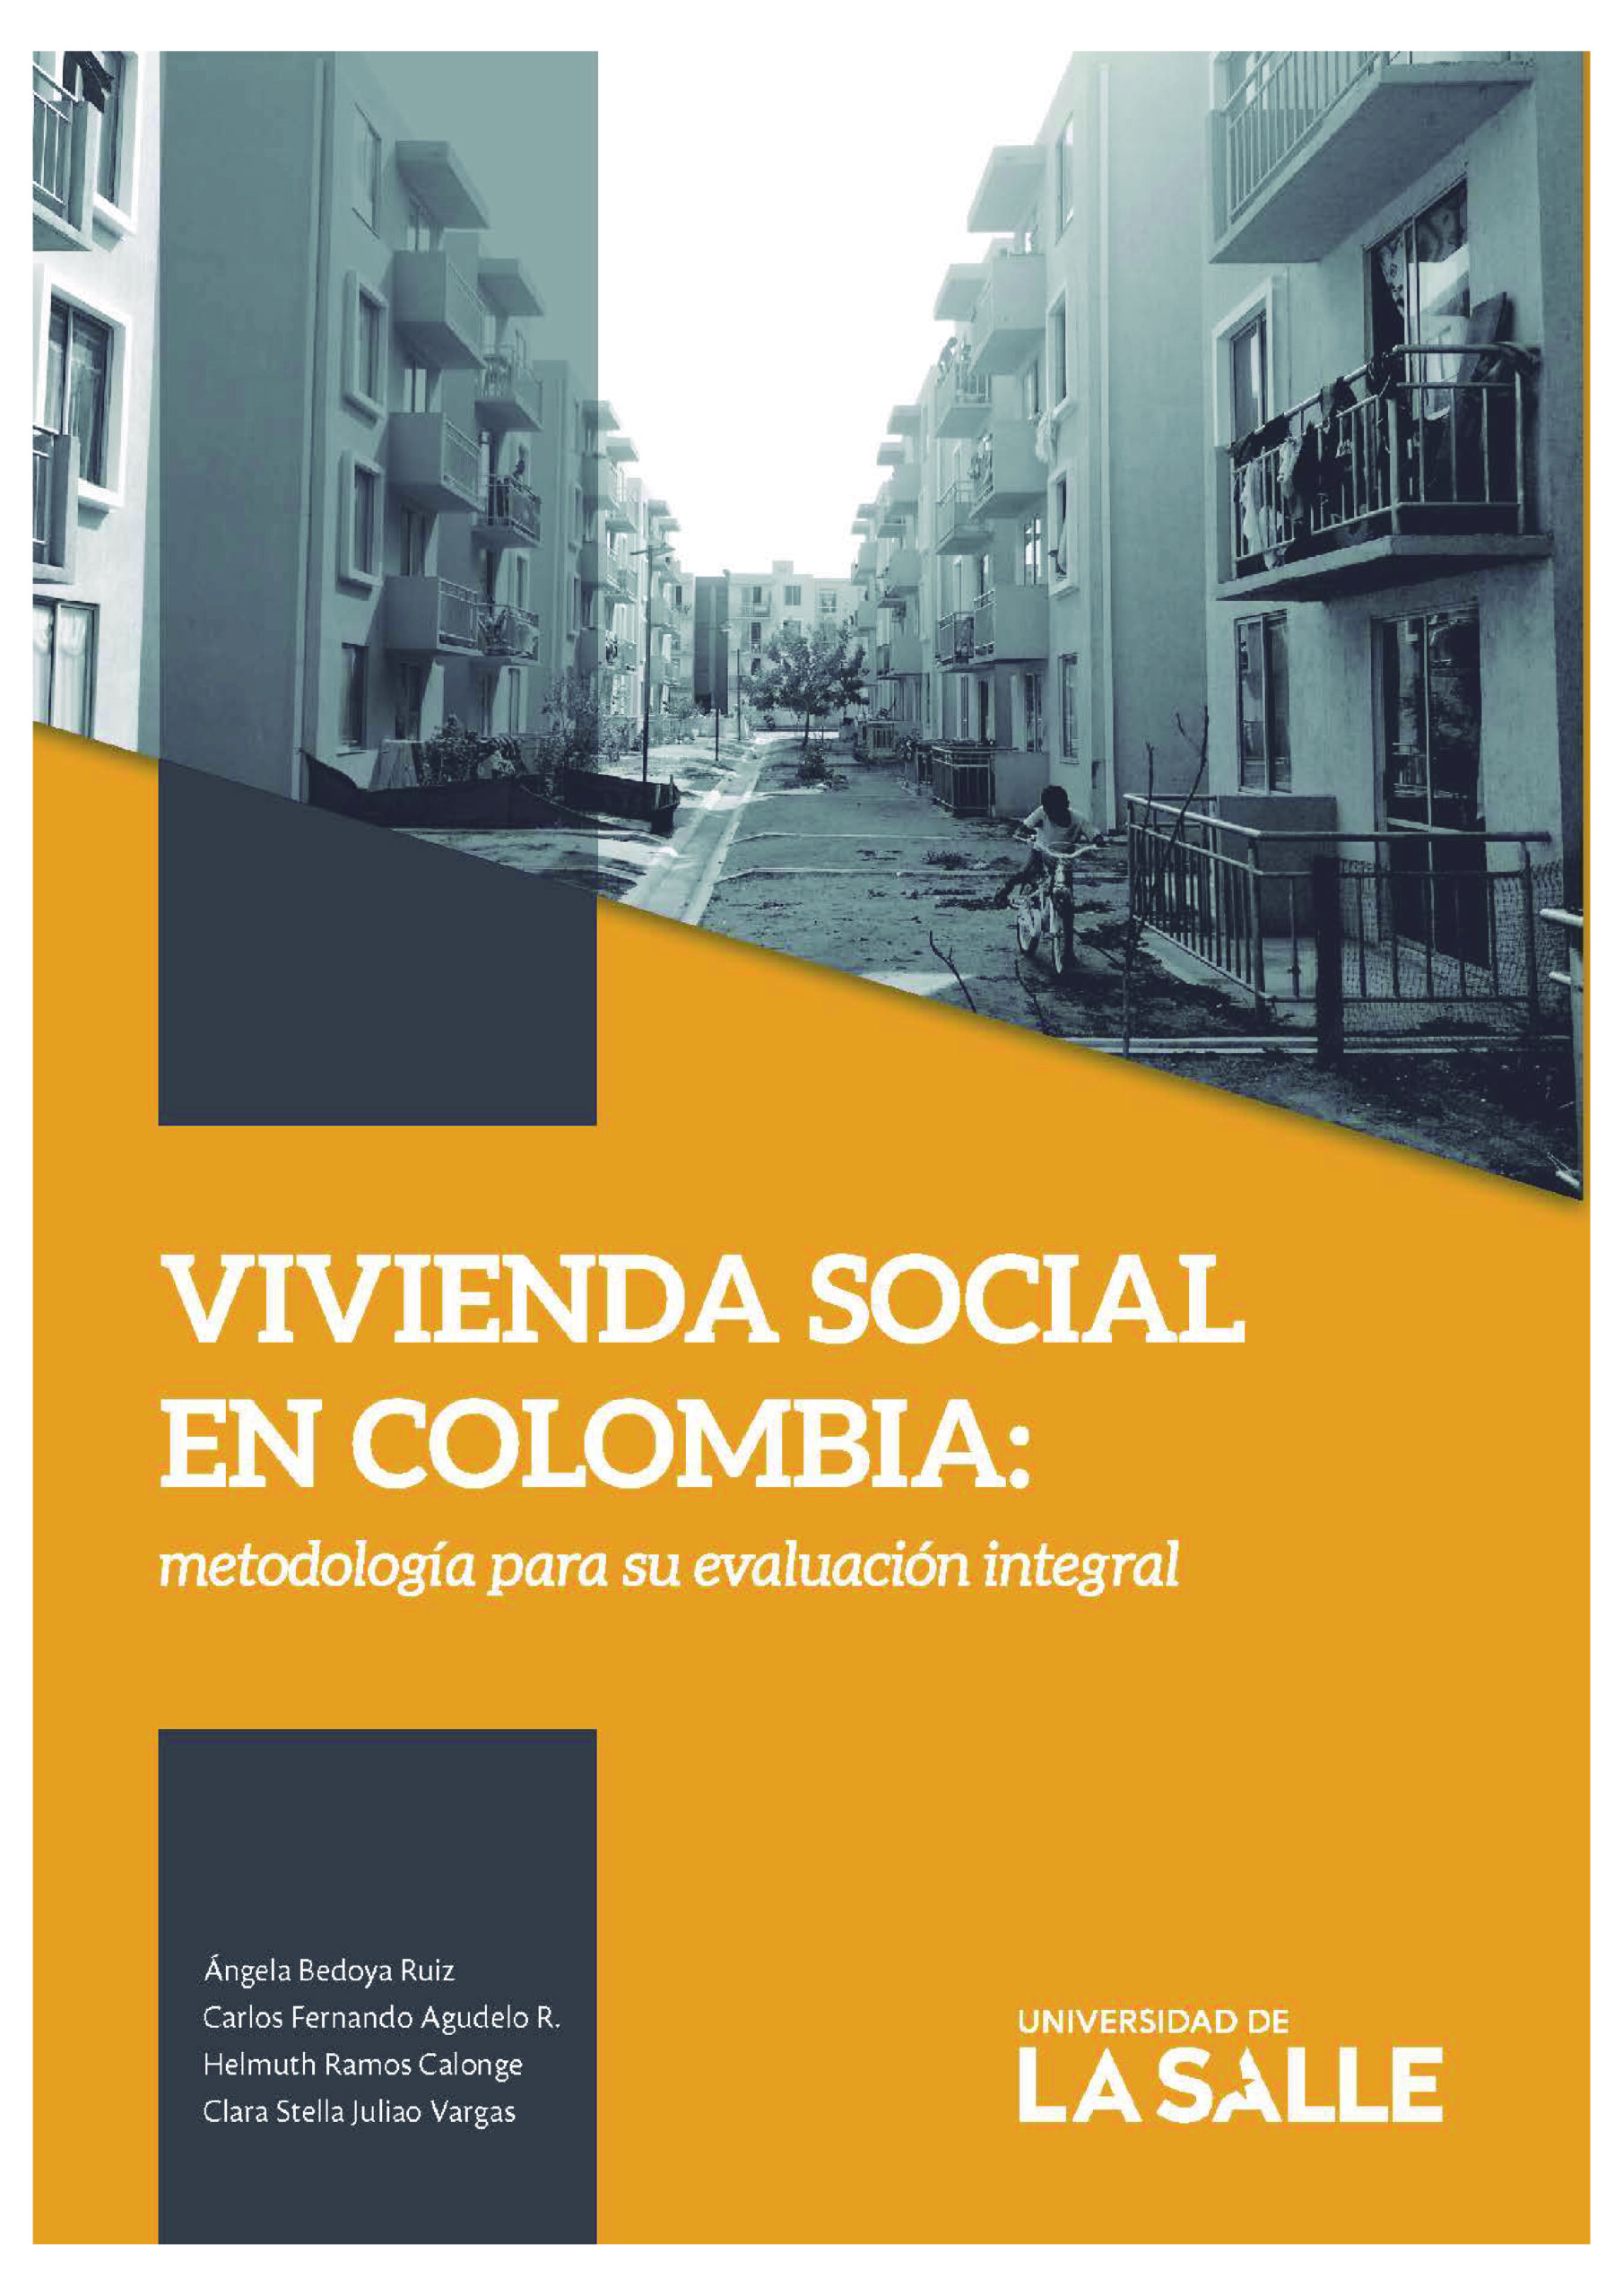 VIVIENDA SOCIAL EN COLOMBIA: METODOLOGÍA PARA SU EVALUACIÓN INTEGRAL